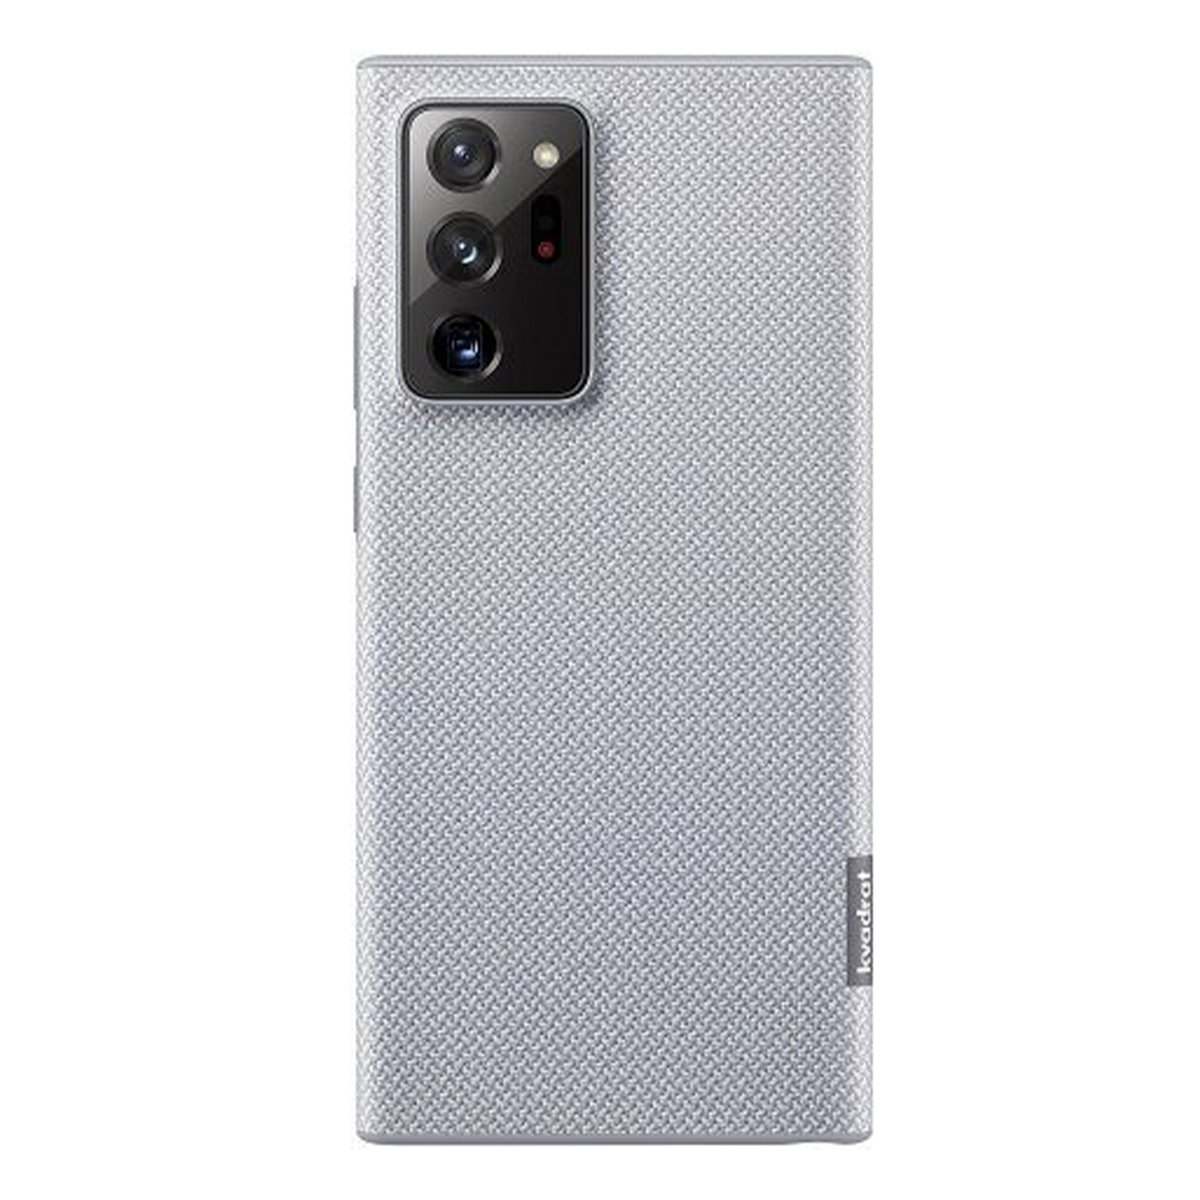 Samsung Galaxy Note 20 Ultra Kvadrat Cover EF-XN985FJEGWW Grey